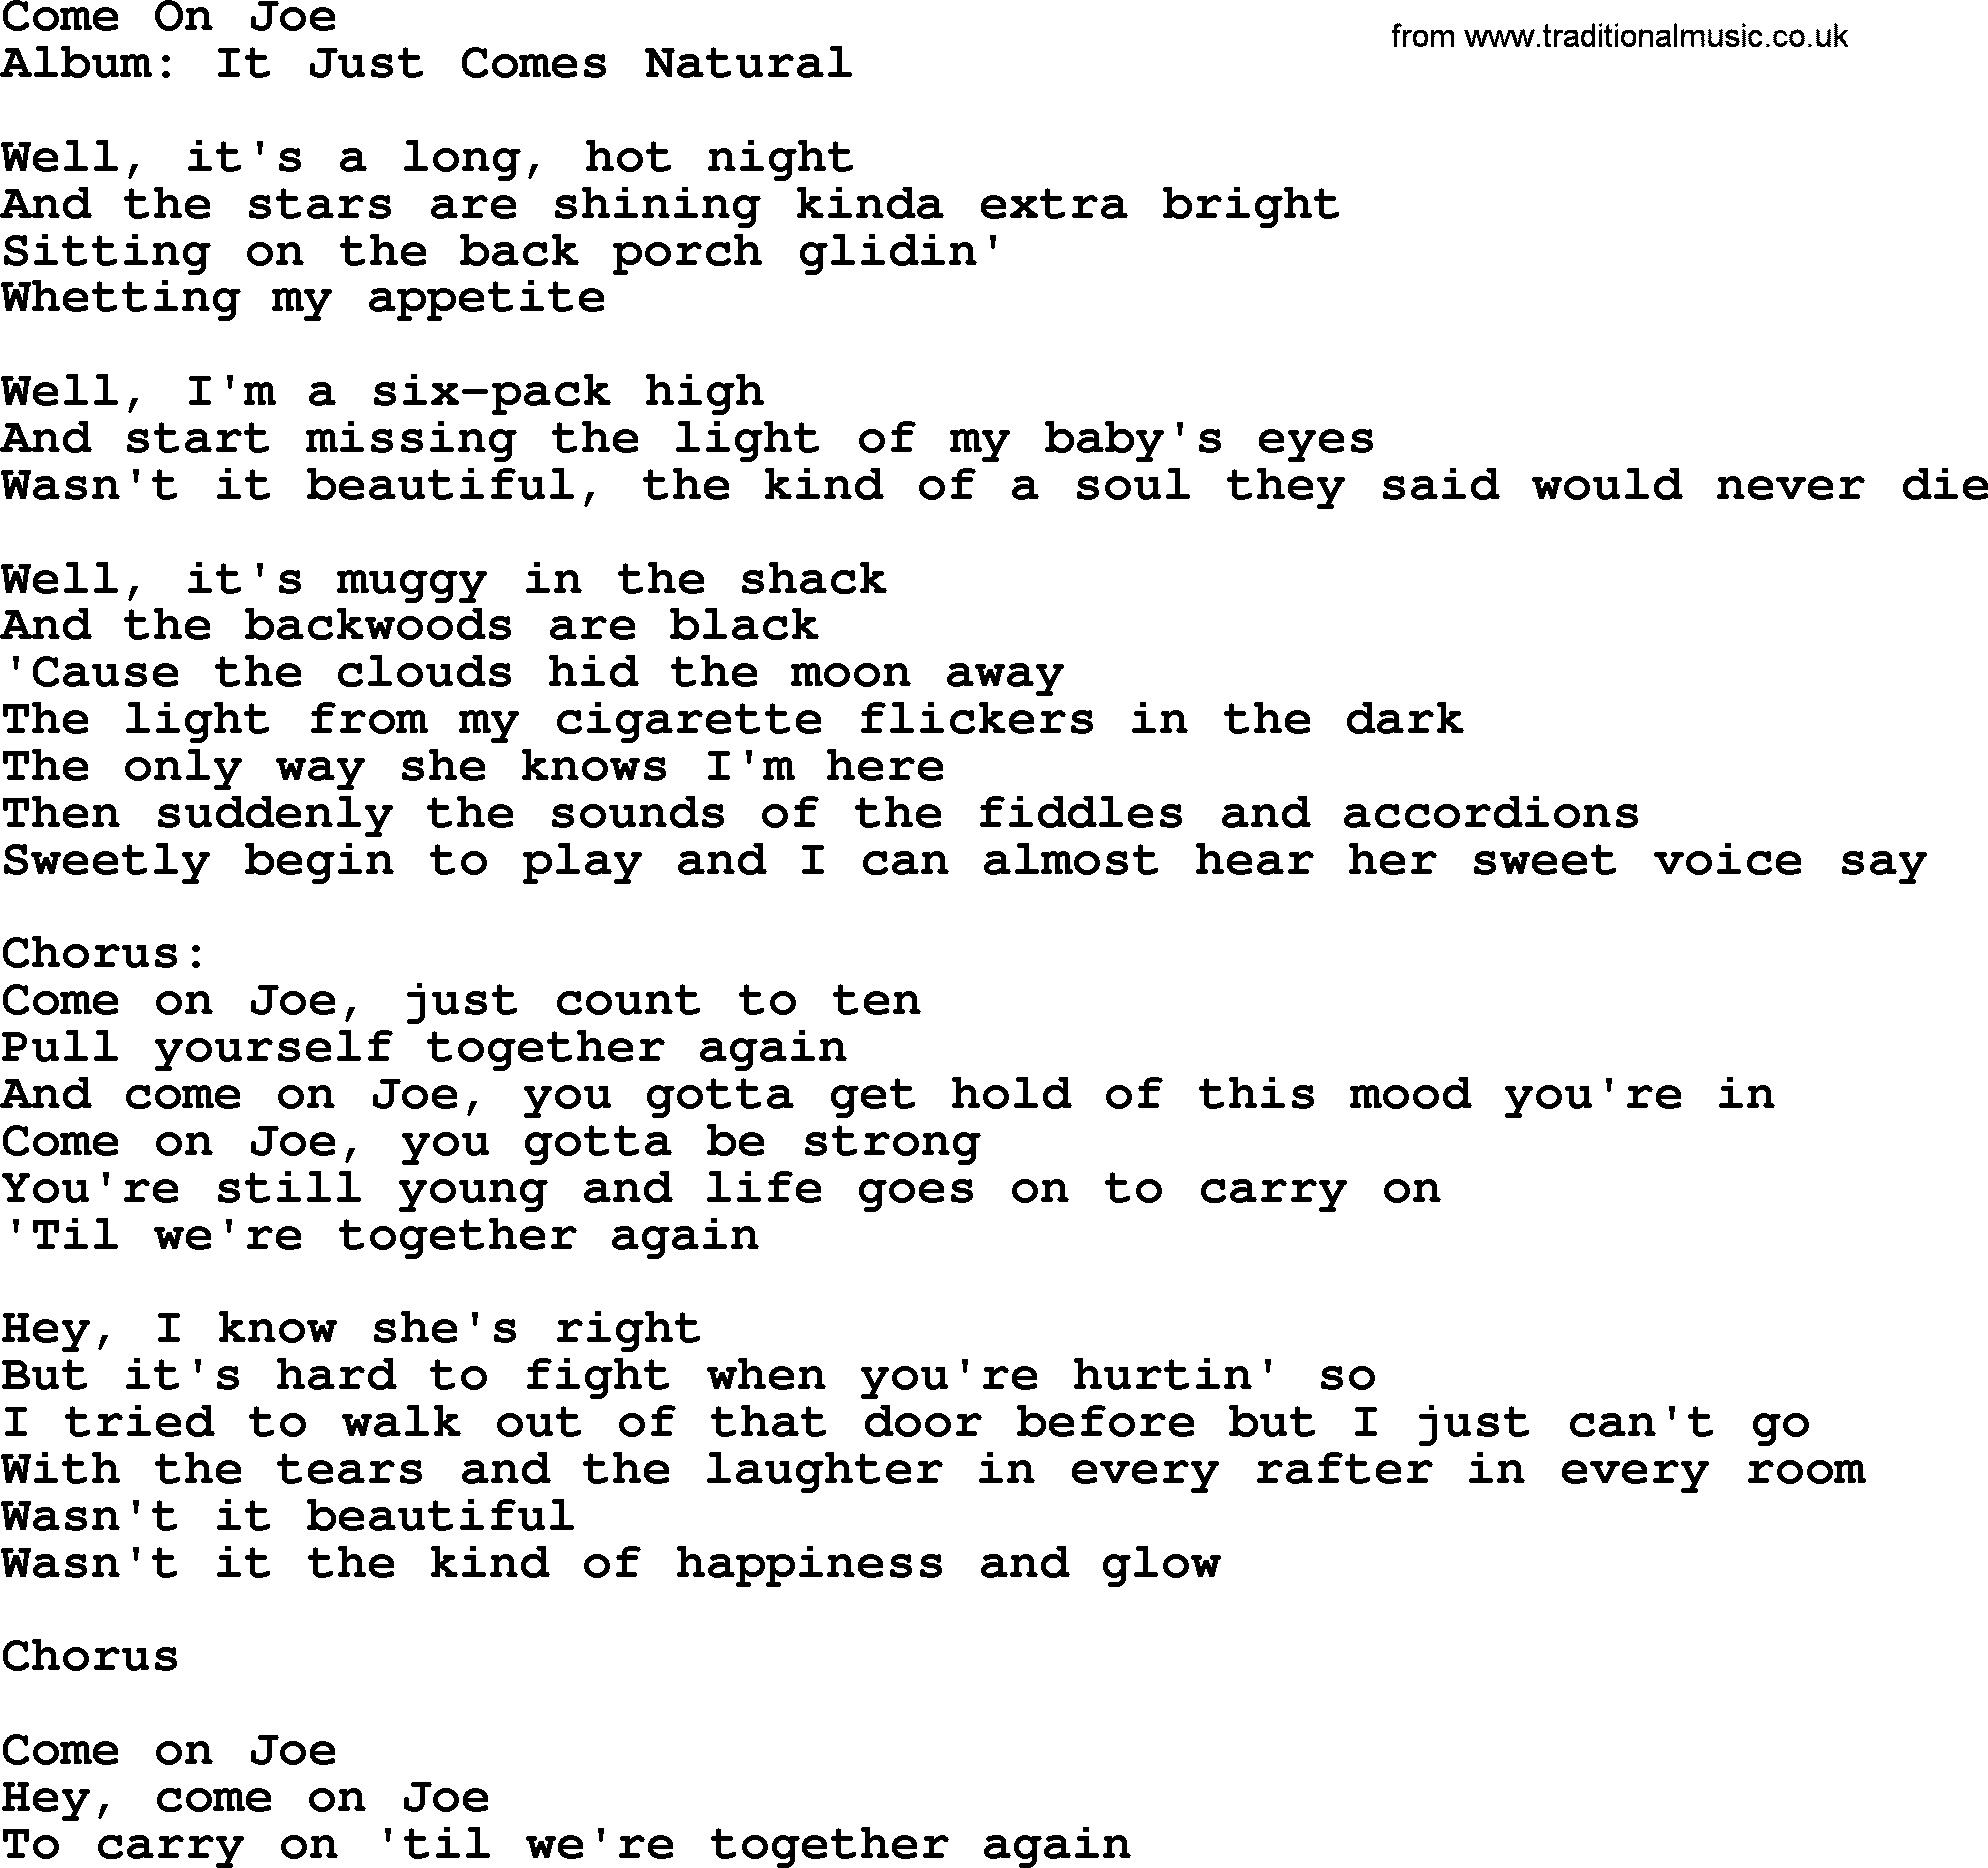 George Strait song: Come On Joe, lyrics